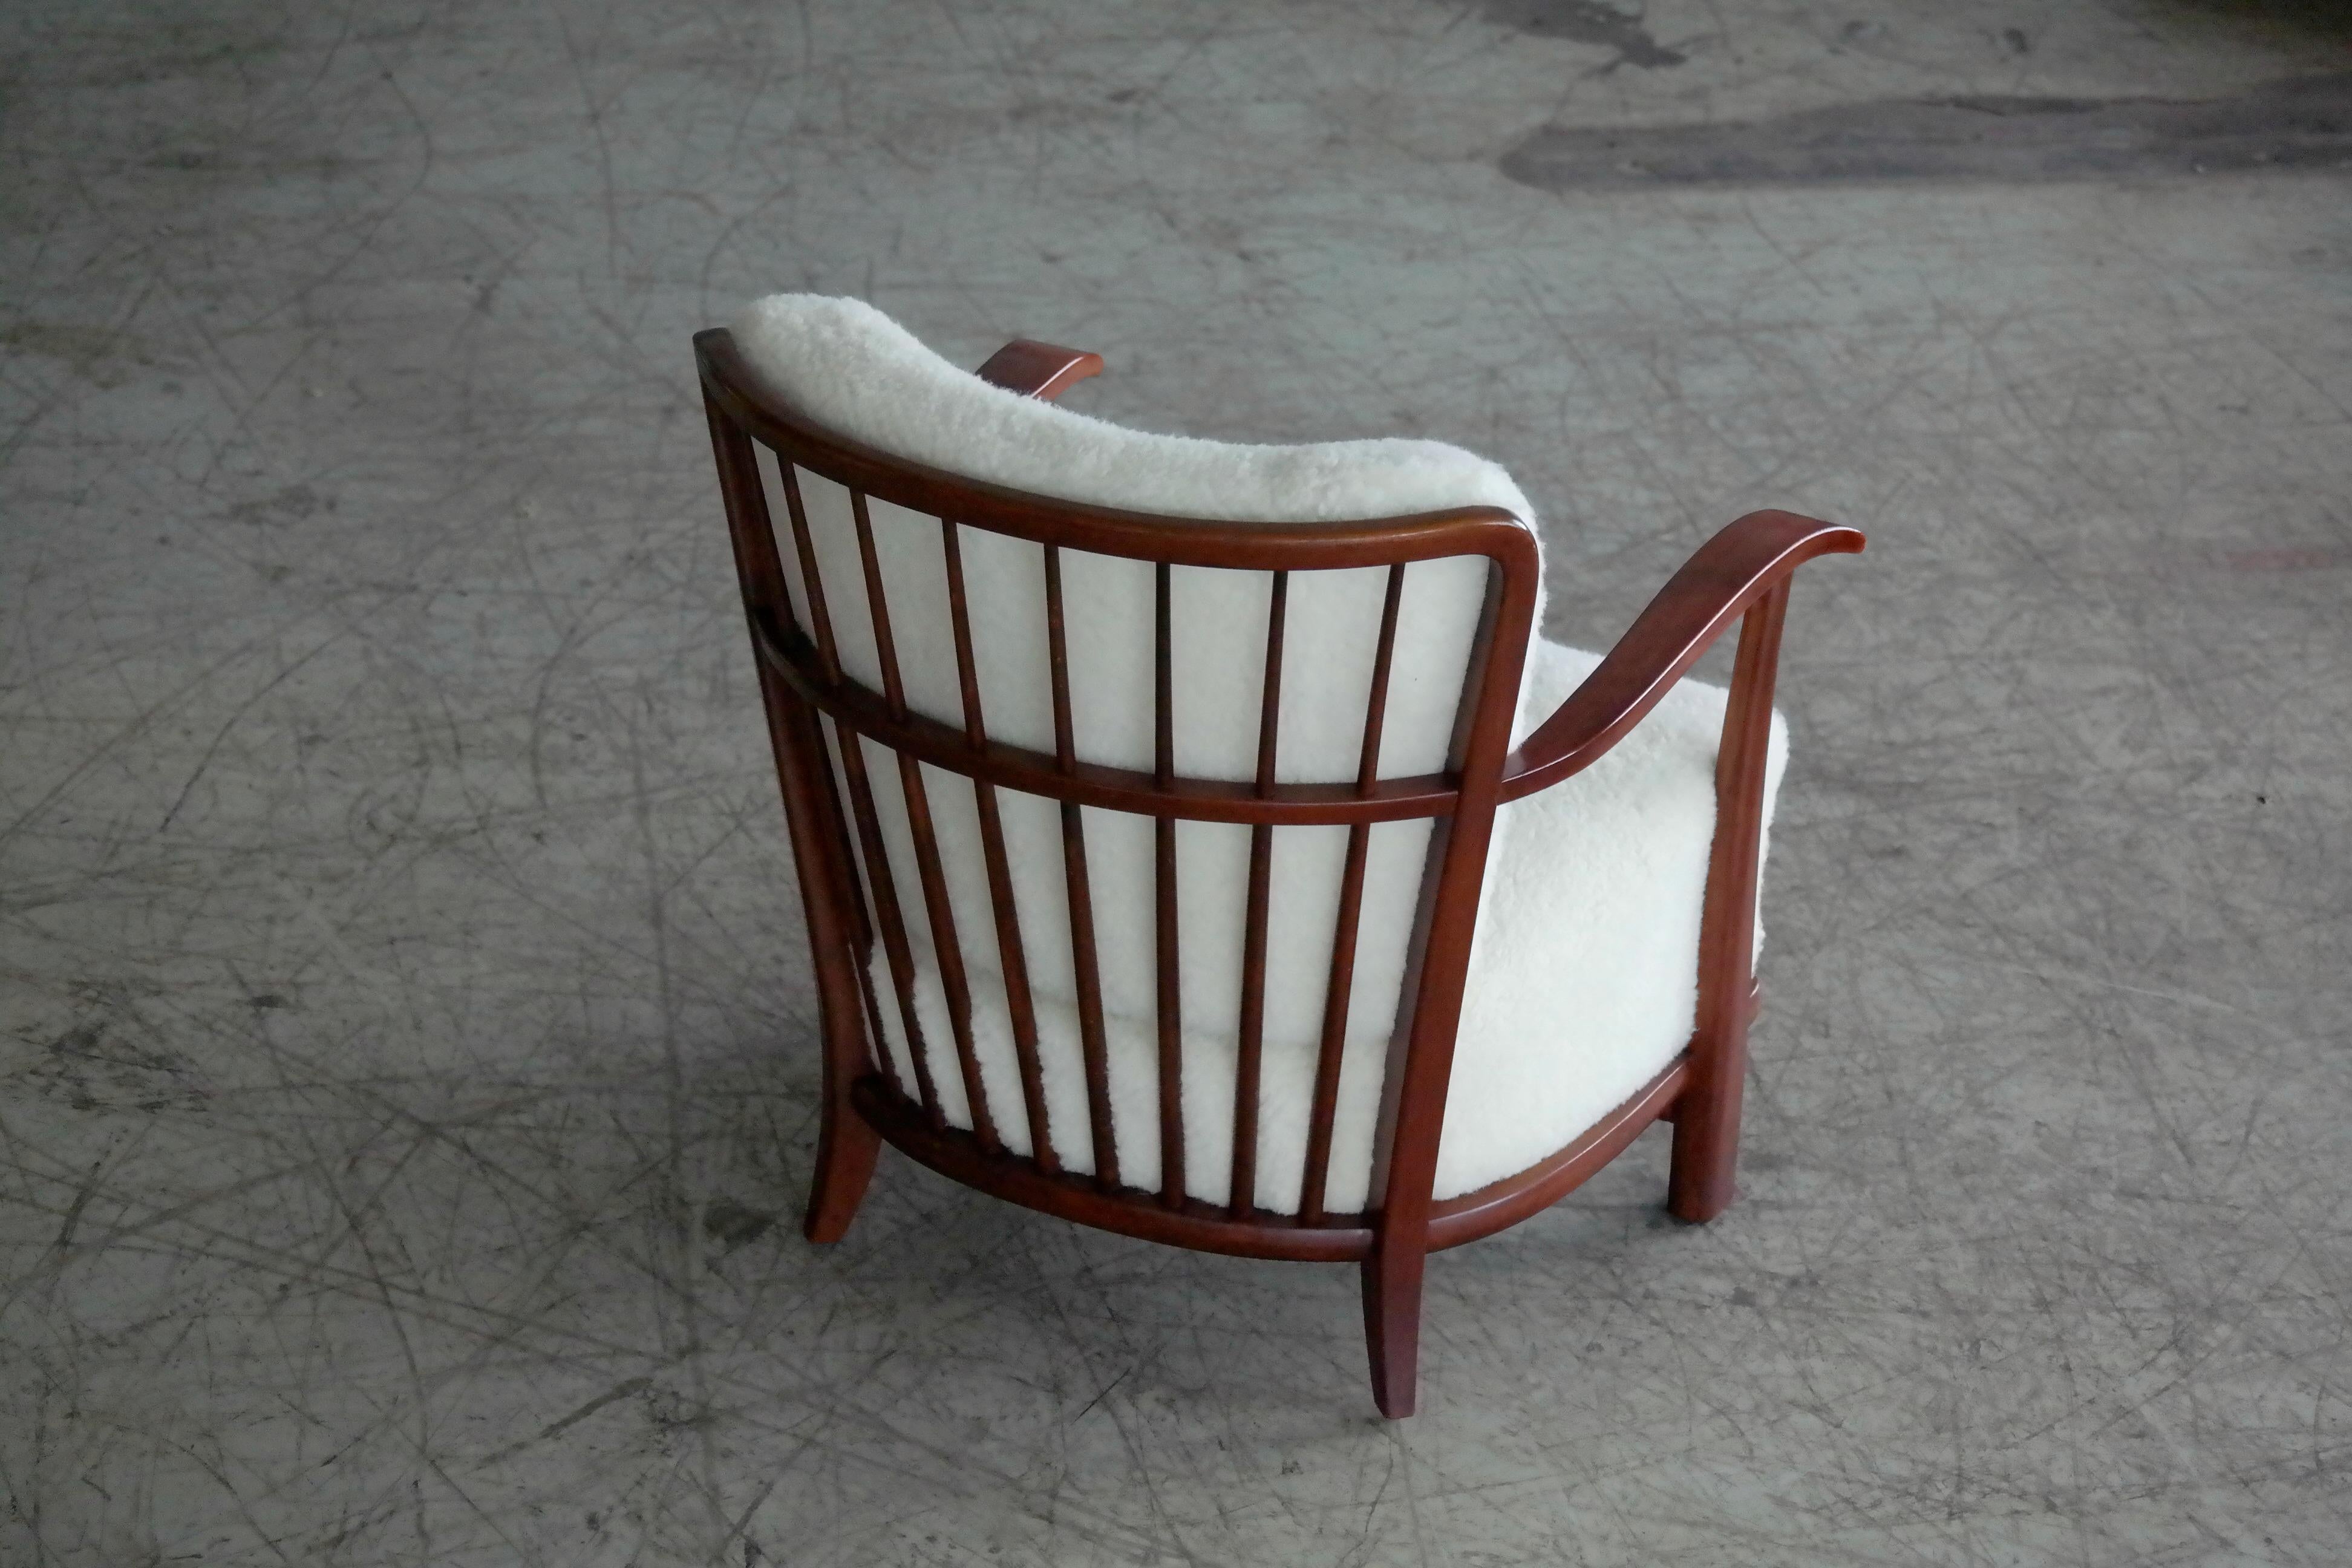 Sheepskin Lounge Chair in Lambswool Frits Schlegel Model 1594 for Fritz Hansen, 1940s